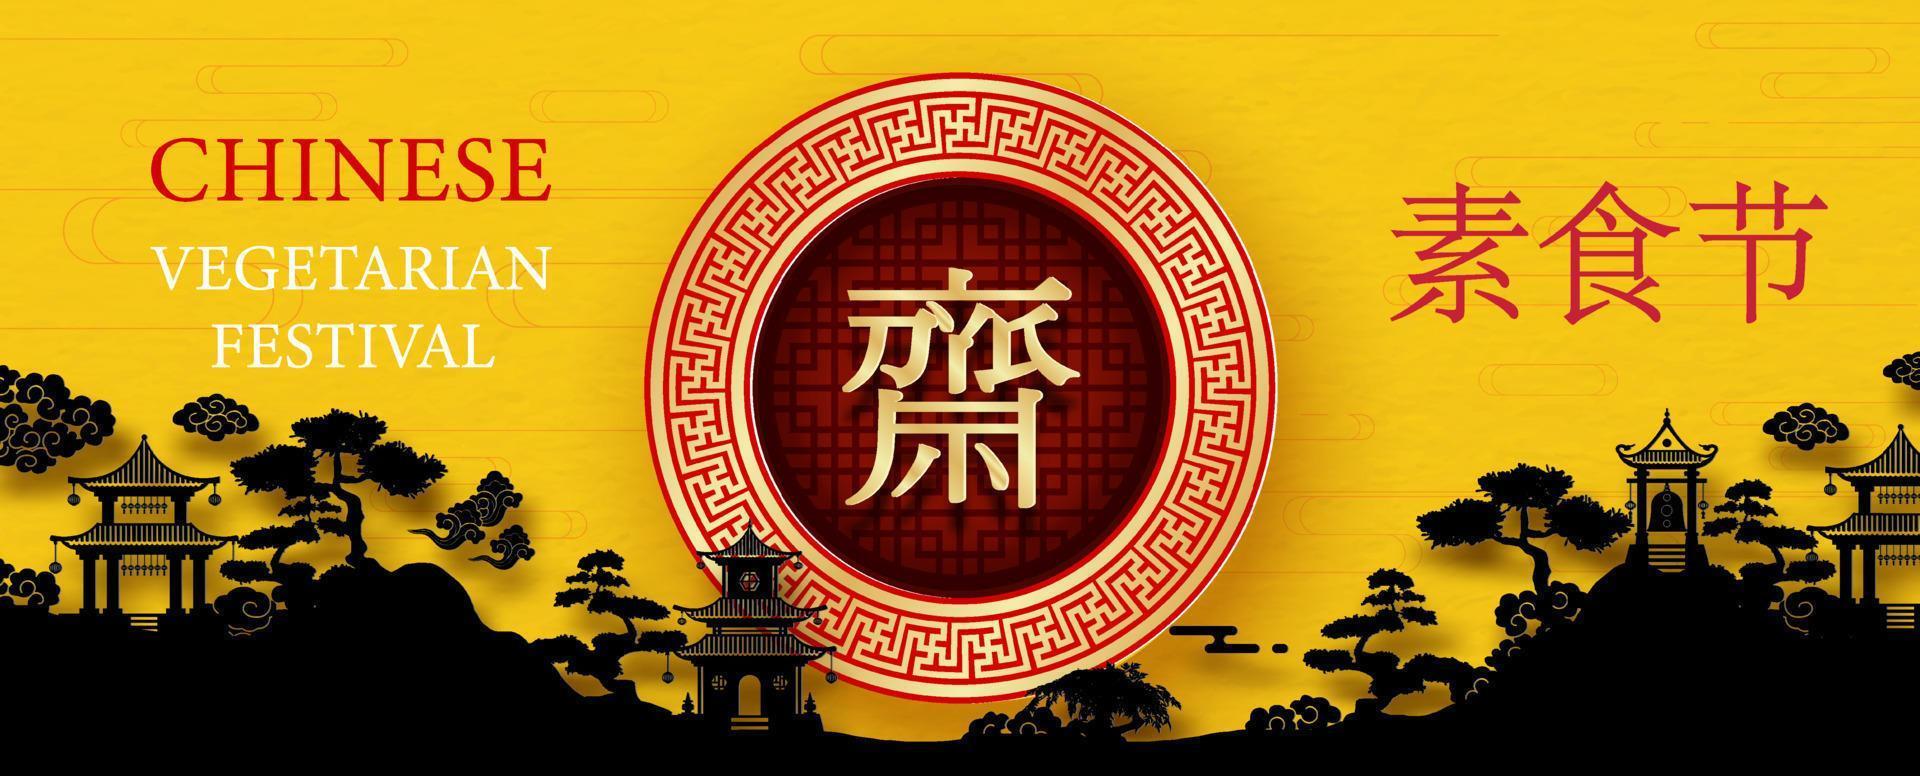 groet kaart en poster van Chinese vegetarisch festival in papier besnoeiing stijl en banier vector ontwerp. Chinese brieven is betekenis vastend voor aanbidden Boeddha en vegetarisch dag in engels.